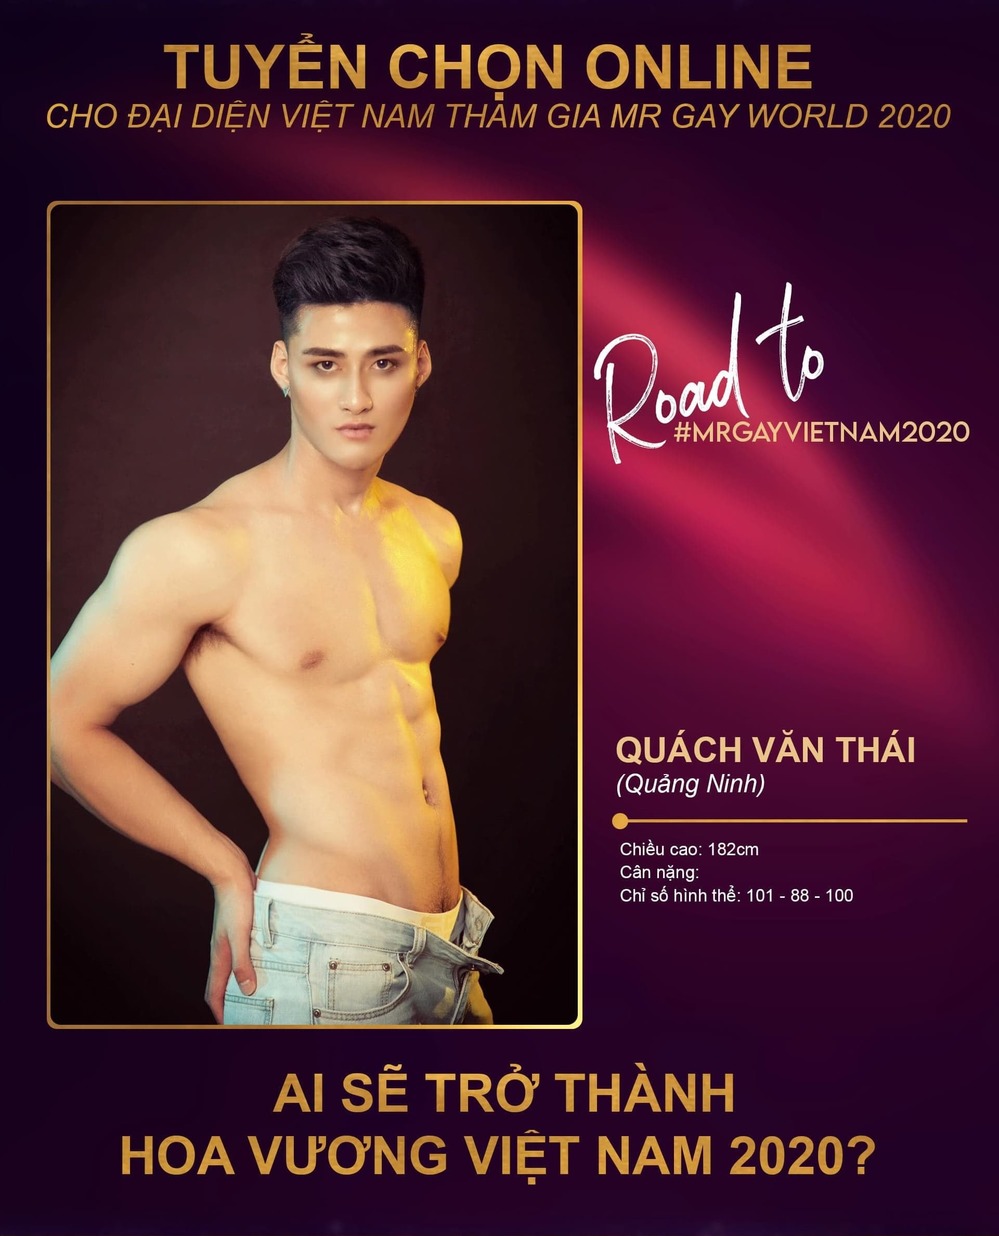  
Quách Văn Thái từng dự thi Mister Vietnam 2019 nhưng không thành công. Anh cao 1m82, số đo 3 vòng là 101-88-100cm. (Ảnh: Page cuộc thi)